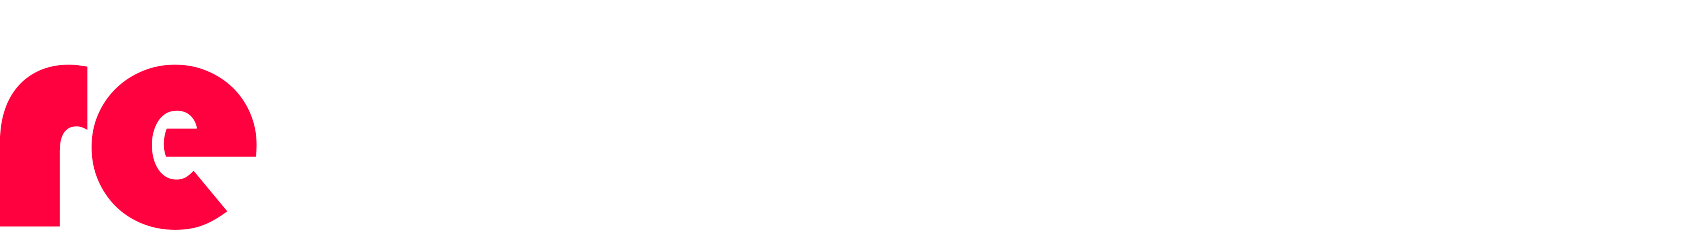 re-woodstock logo